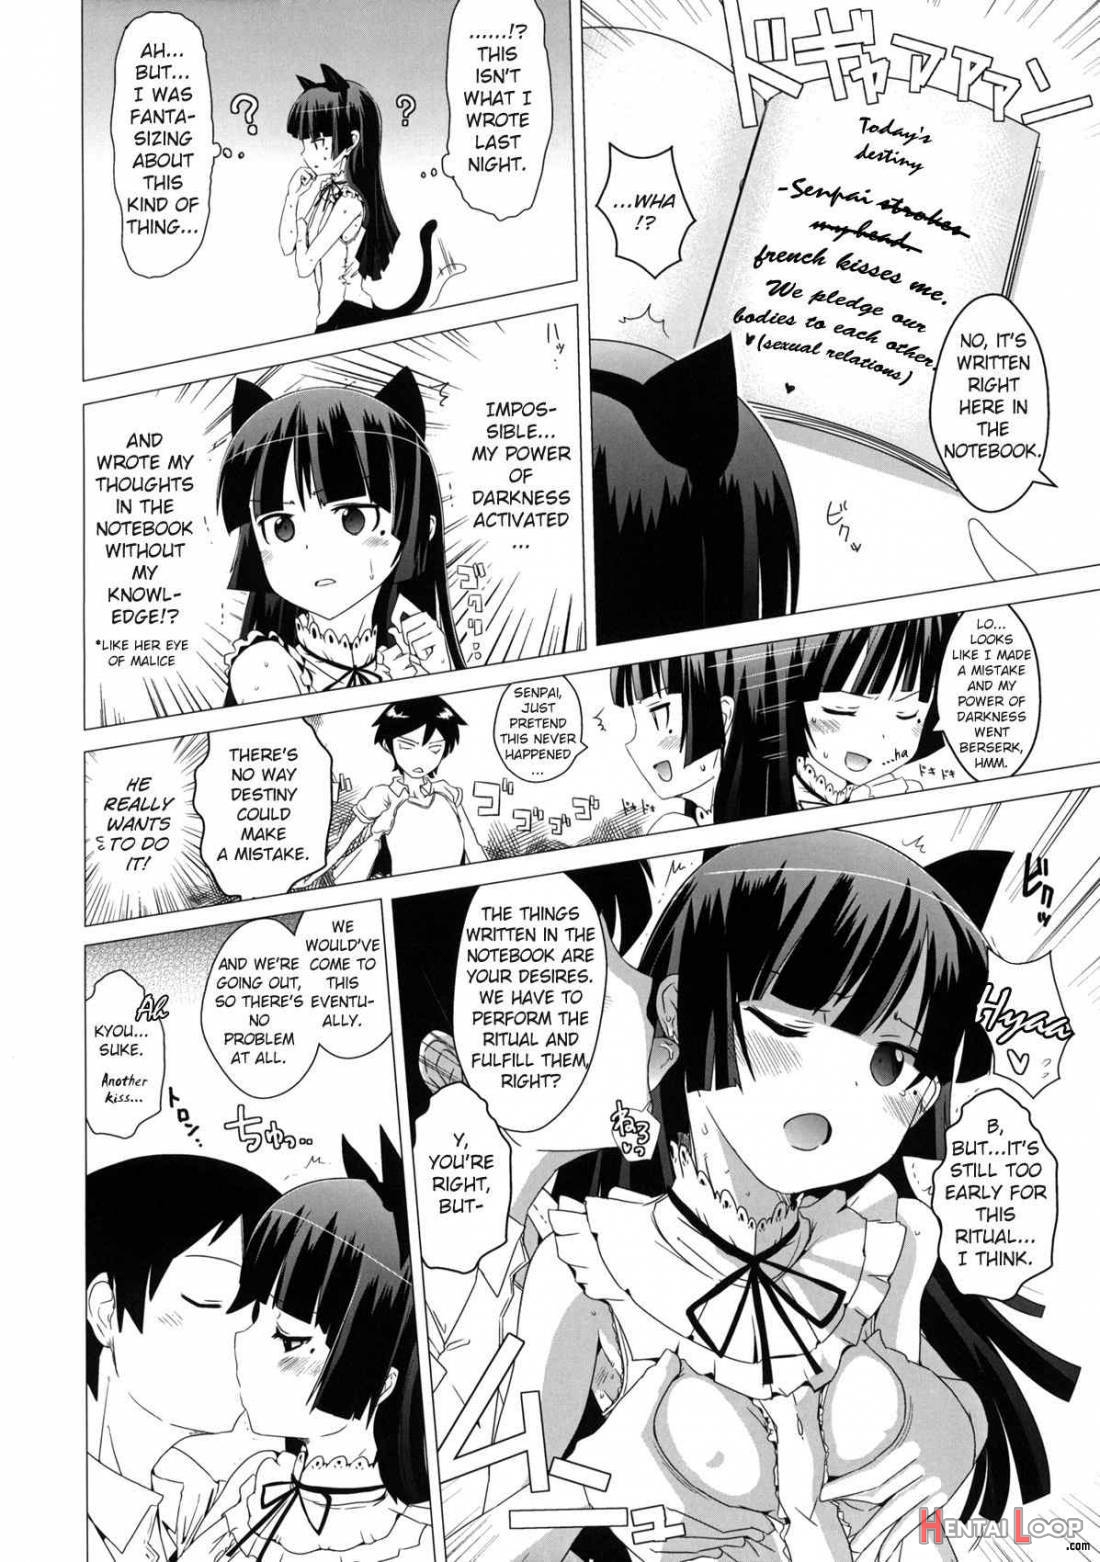 Namanurui Kuroneko + Paper page 5